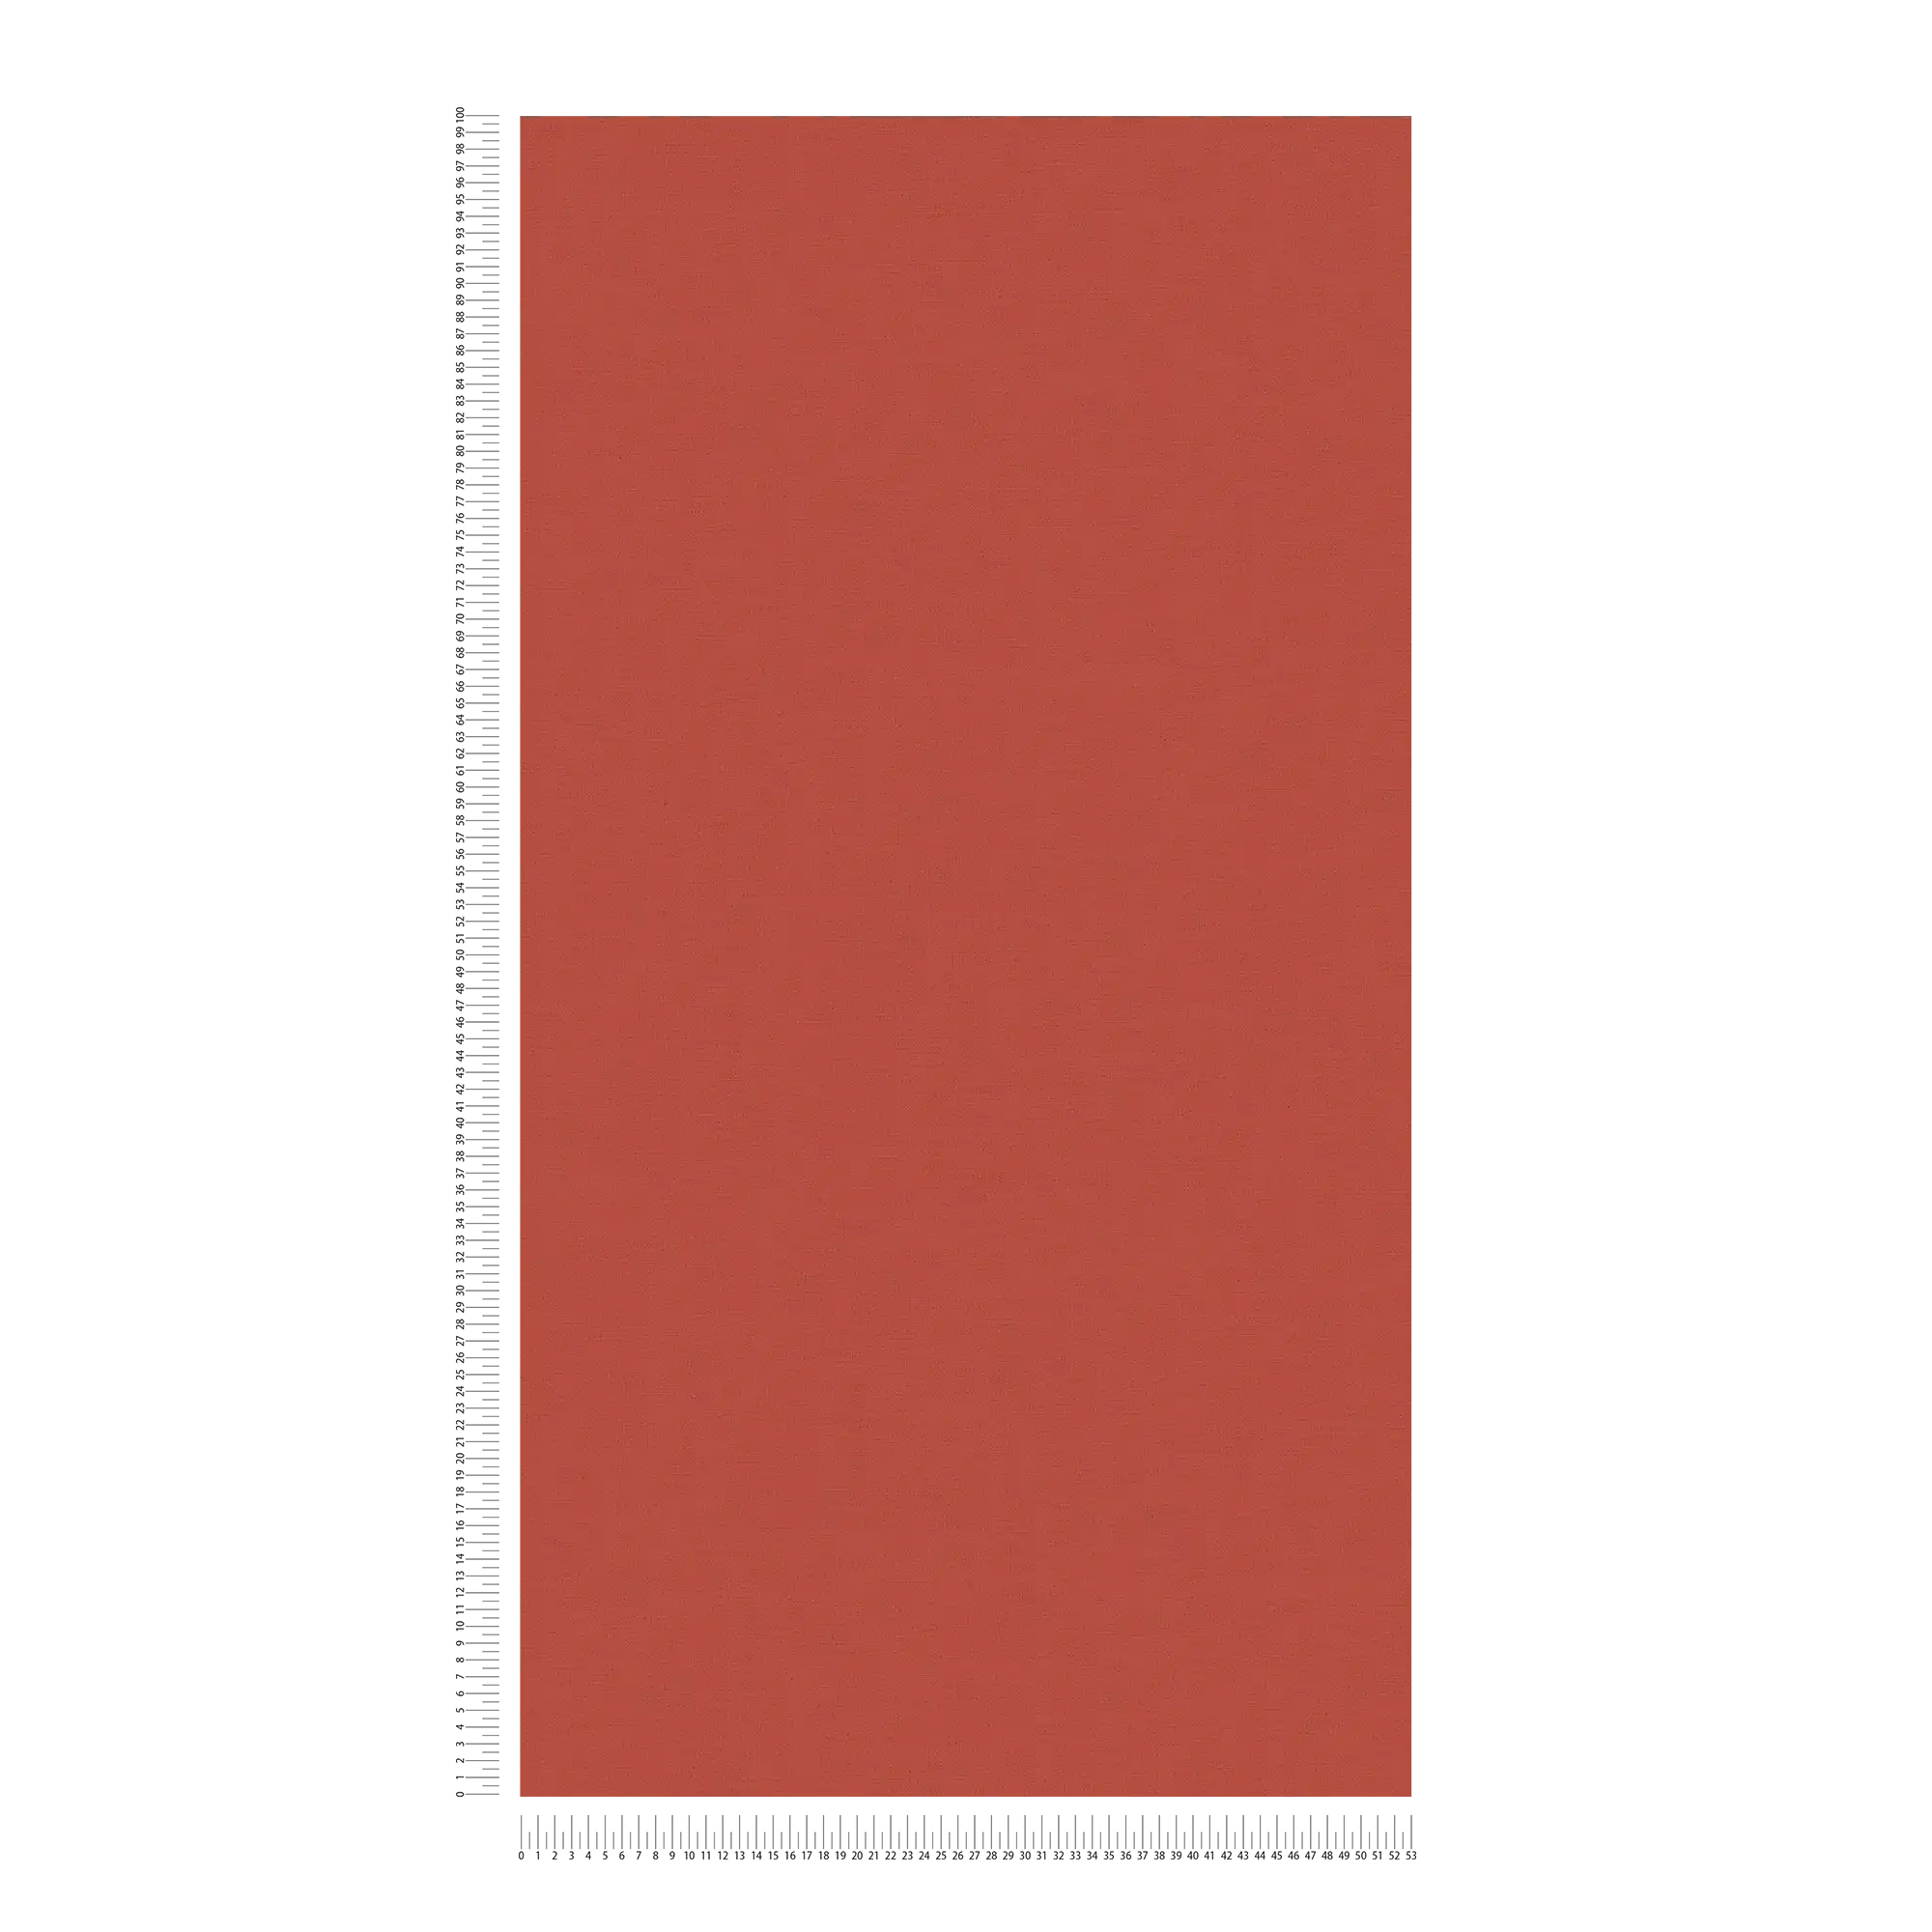             Rood behang schoorsteen rood vlak met textieldesign
        